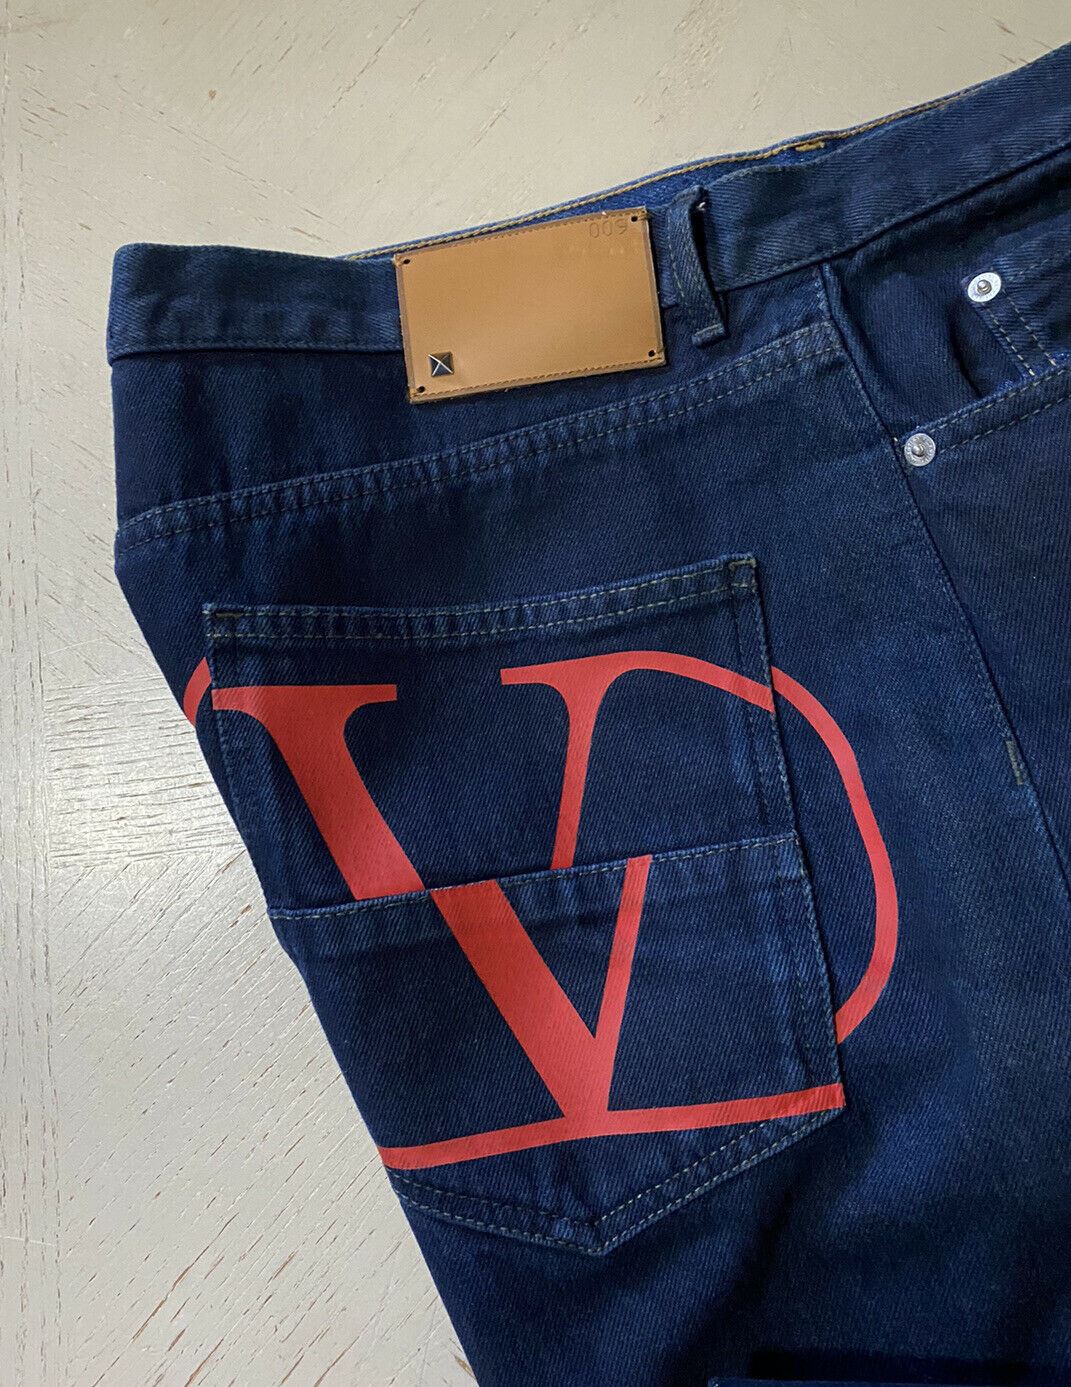 NWT 1295 долларов США Valentino Мужские джинсы с карманами и логотипом синие/красные 36 (размер 38) США